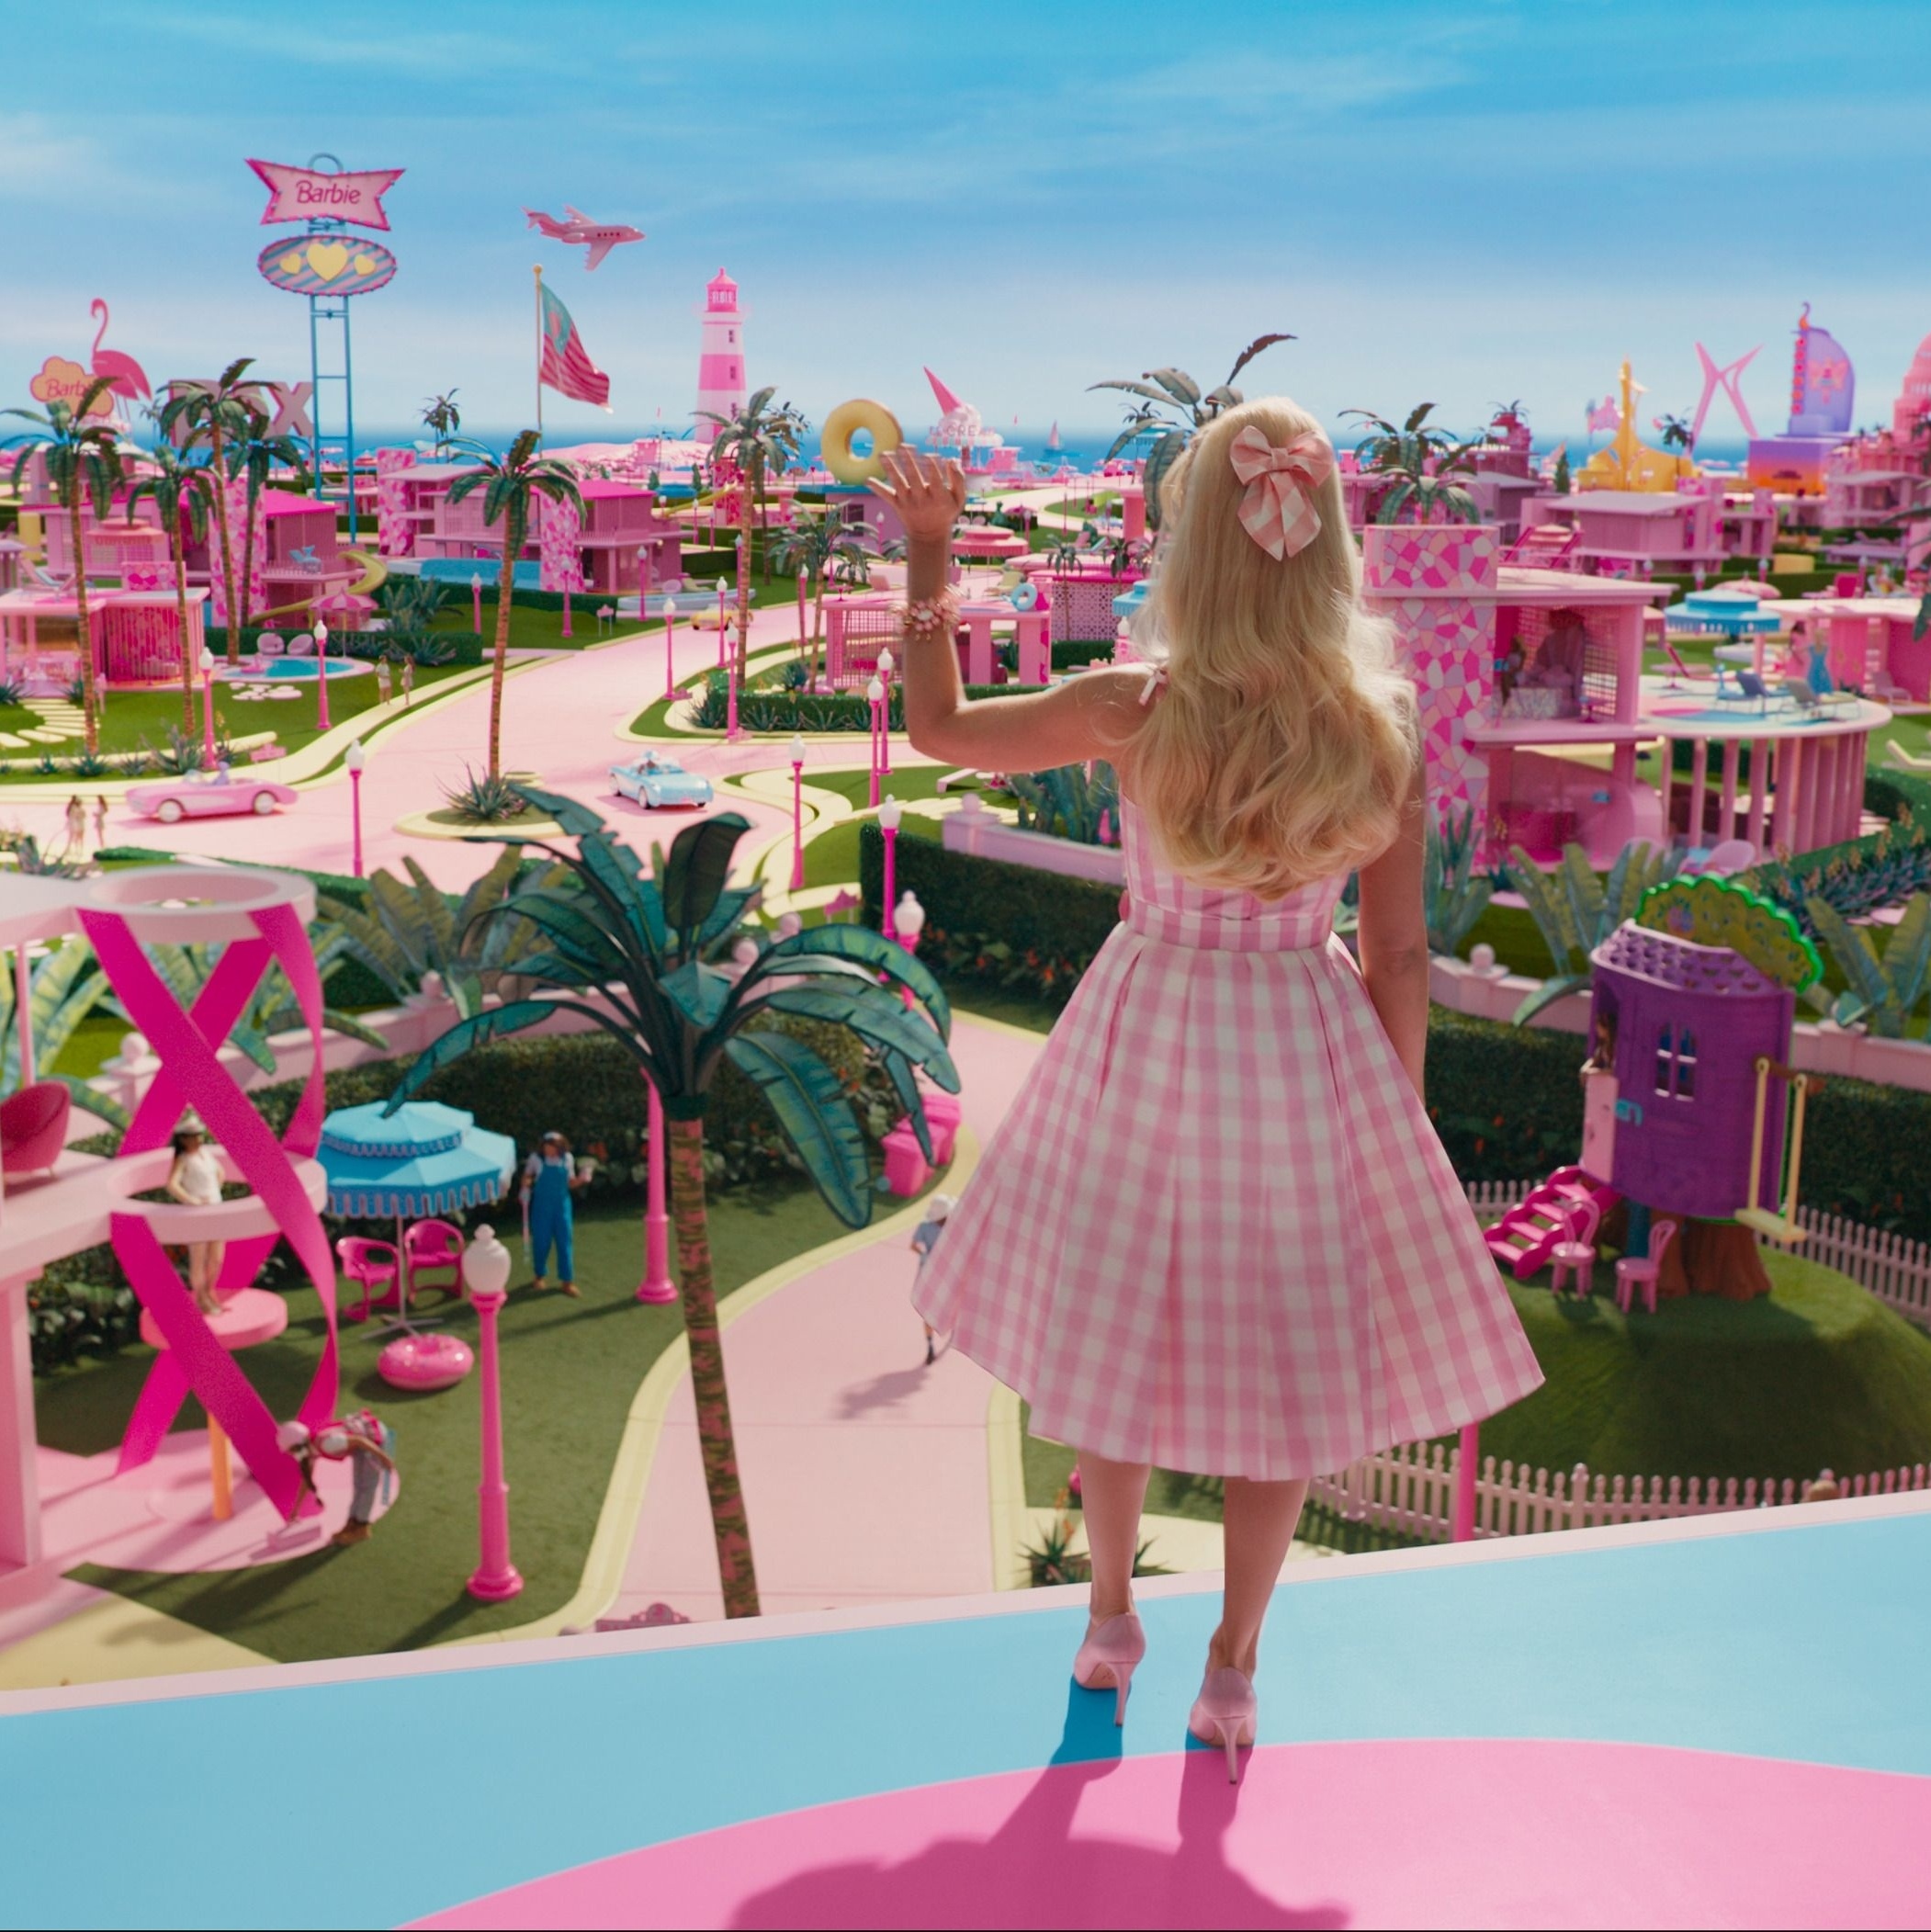 Quer usar as roupas da Barbie? Teste esse filtro com looks do filme